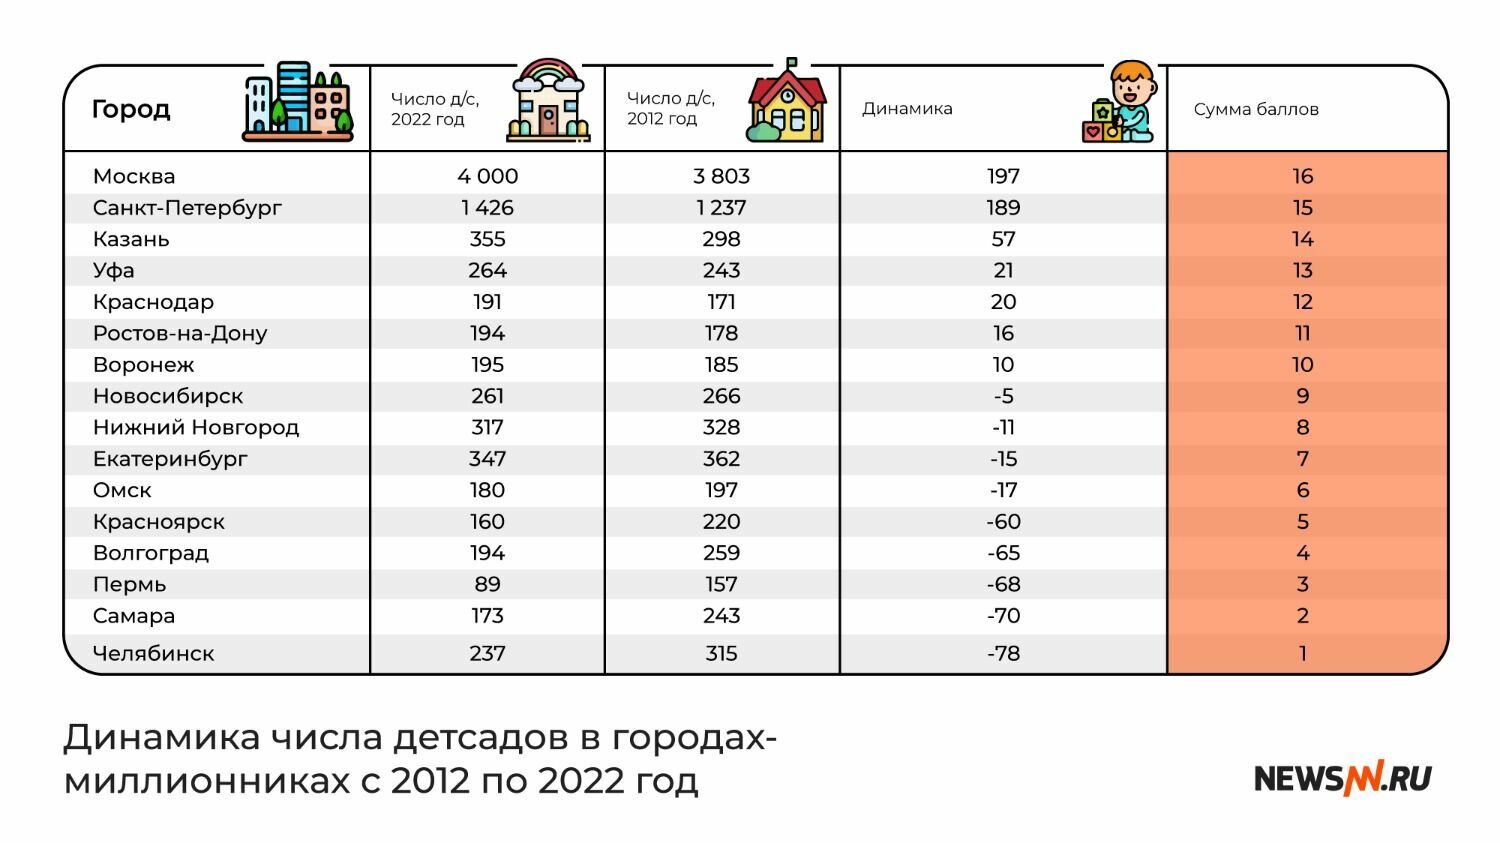 Динамика числа детсадов в городах-миллионниках России